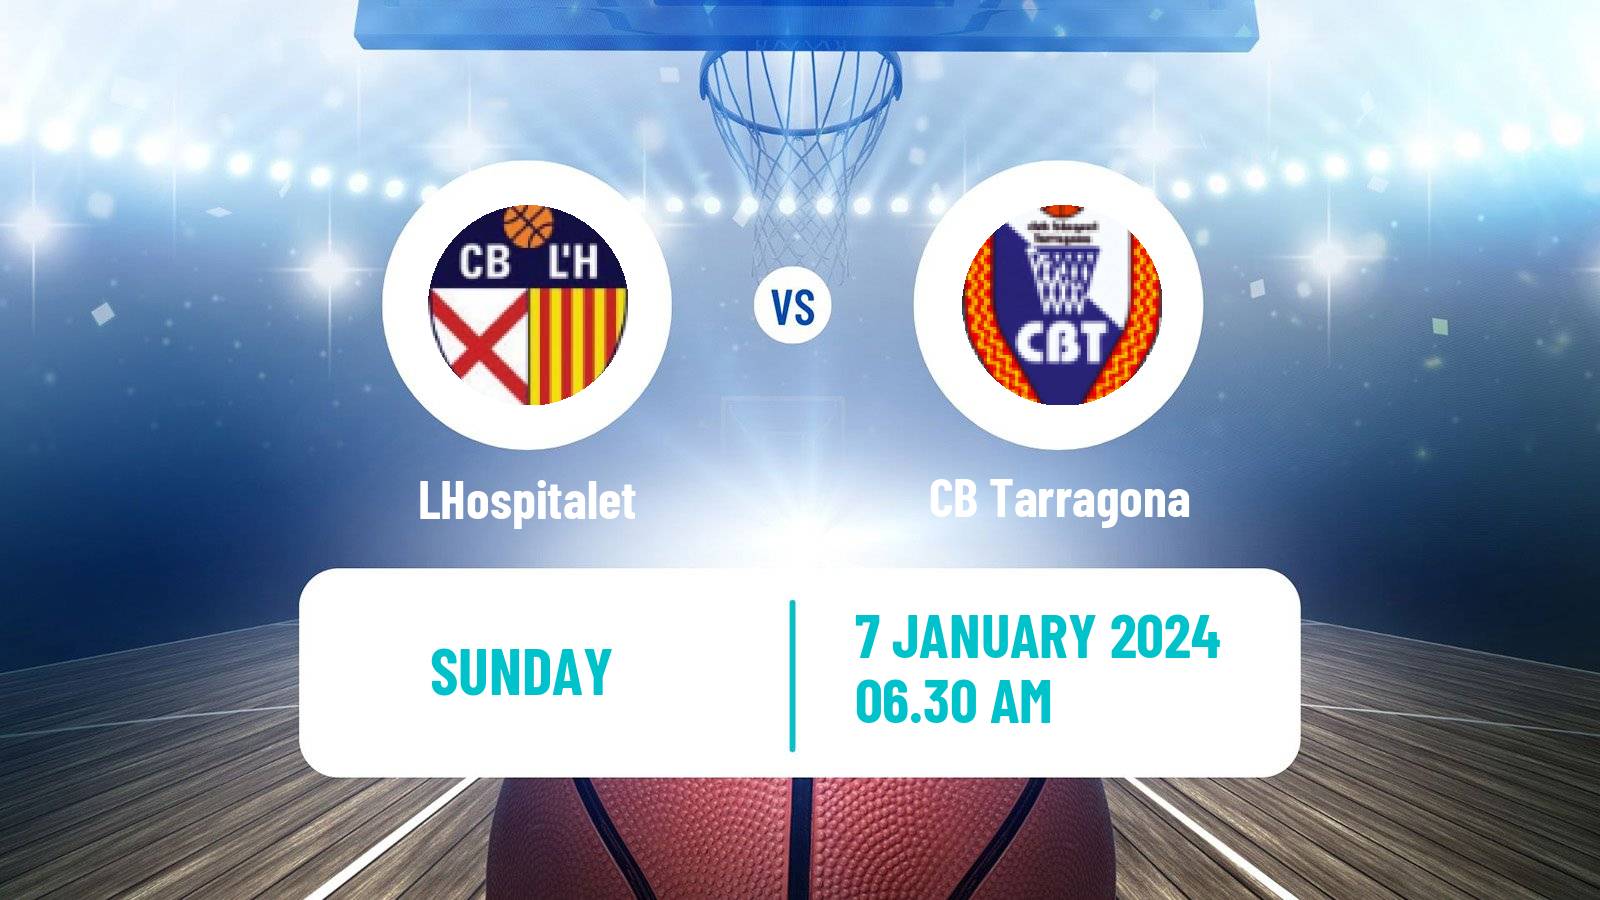 Basketball Spanish LEB Plata LHospitalet - Tarragona